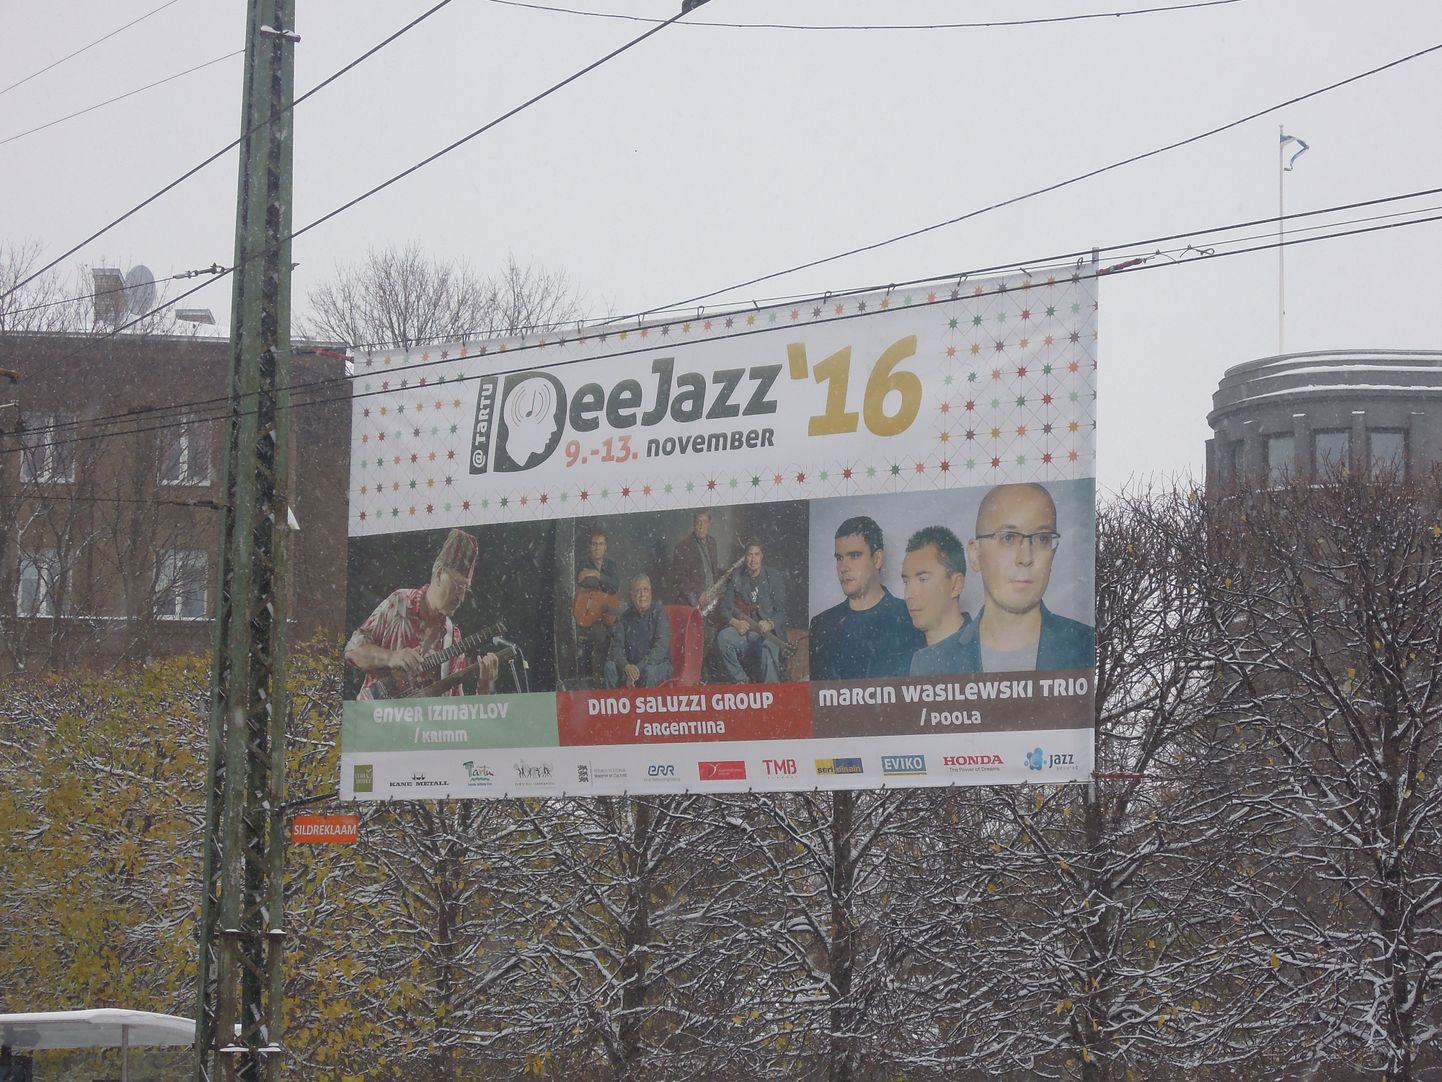 Рекламная растяжка фестиваля IdeeJazz в Таллинне на Тынисмяги.